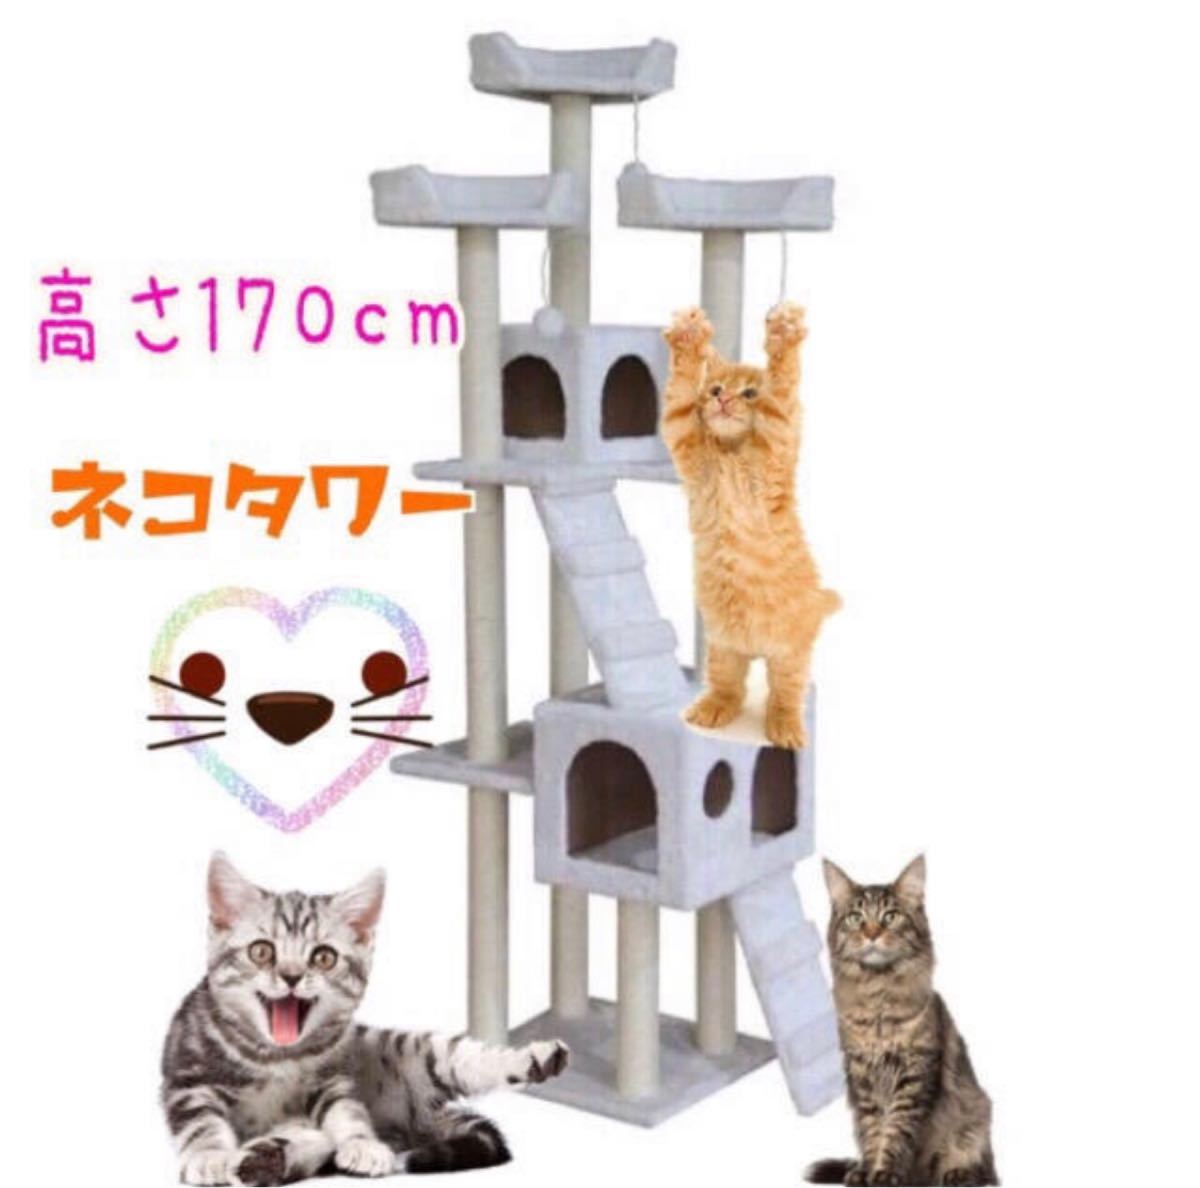 キャットタワー ブラウン猫 Cat Tower ワイドサイズ 高さ170cm